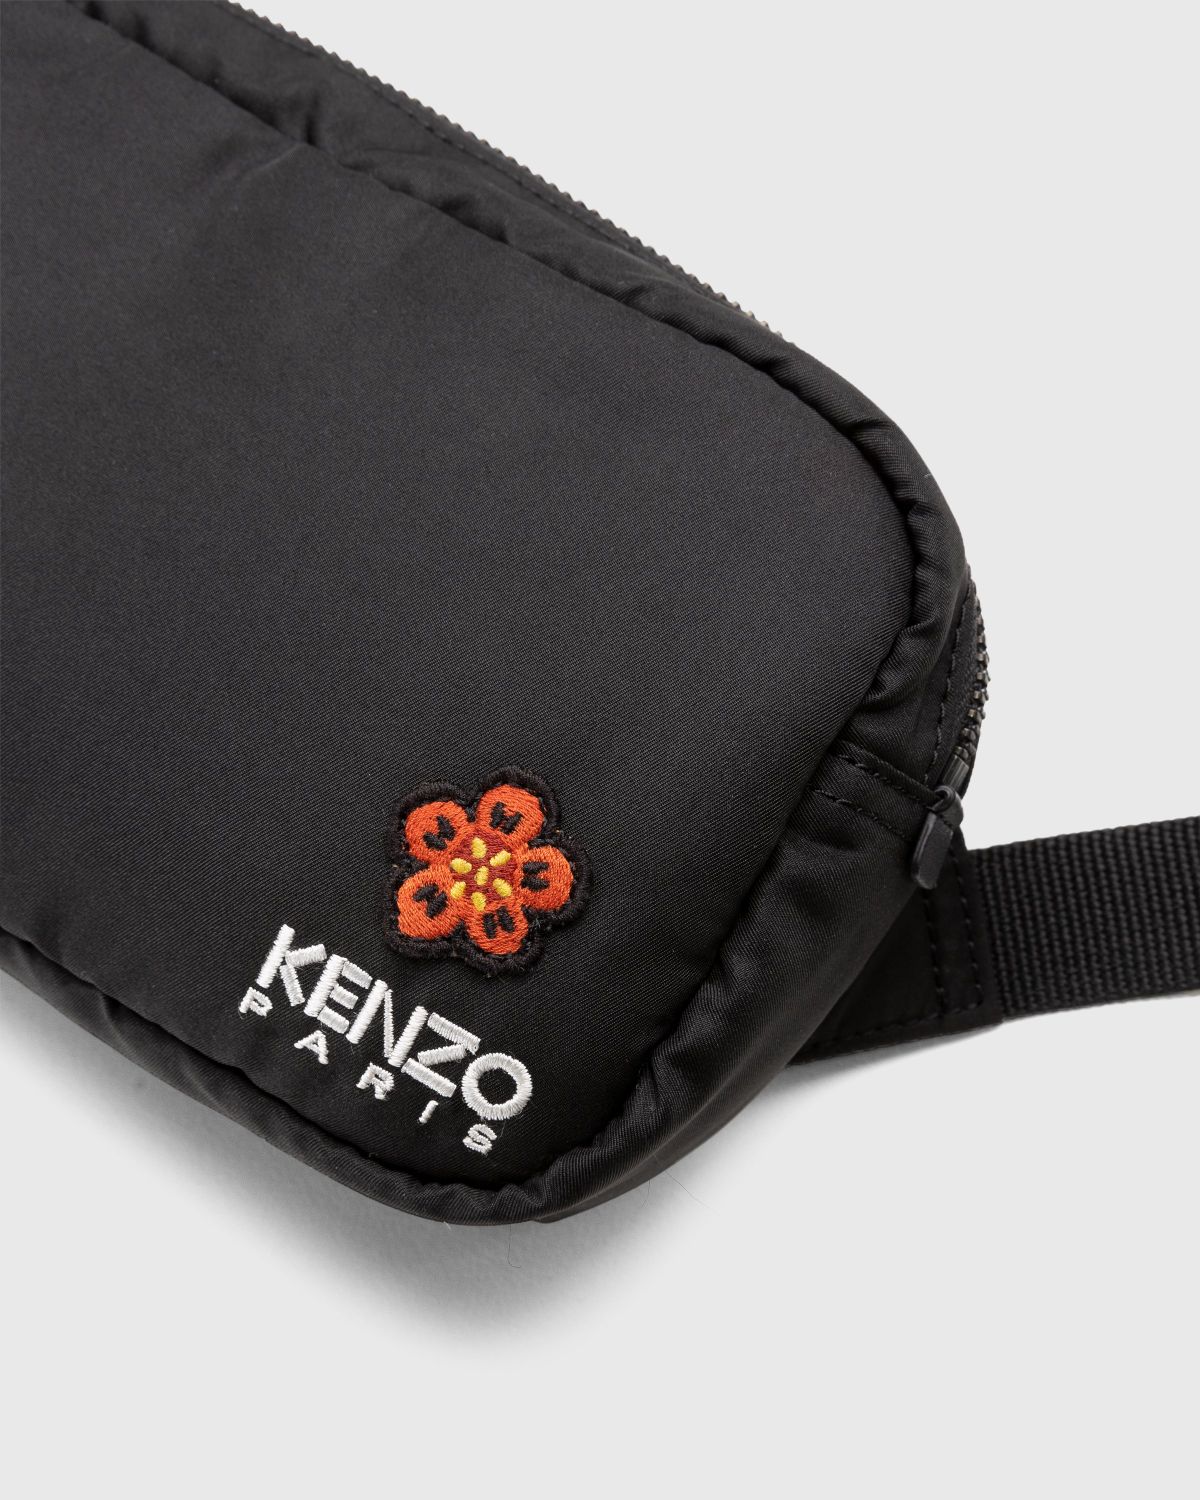 Kenzo – Crest Crossbody Bag Black - Shoulder Bags - Black - Image 5